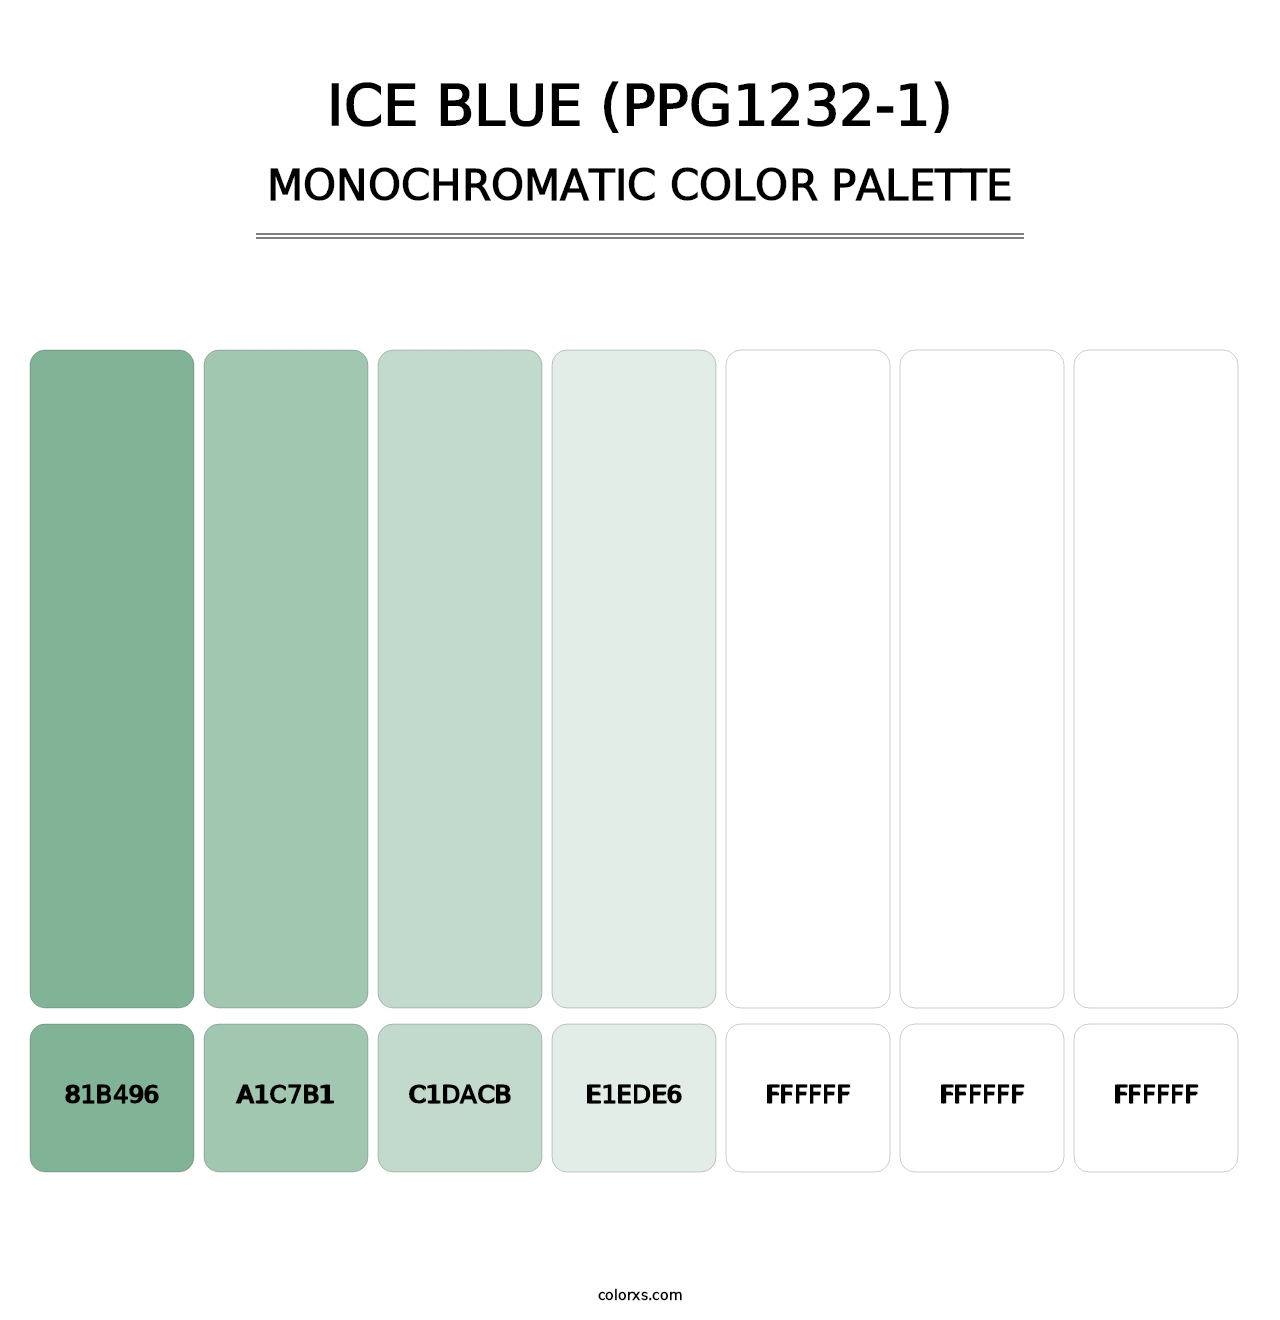 Ice Blue (PPG1232-1) - Monochromatic Color Palette